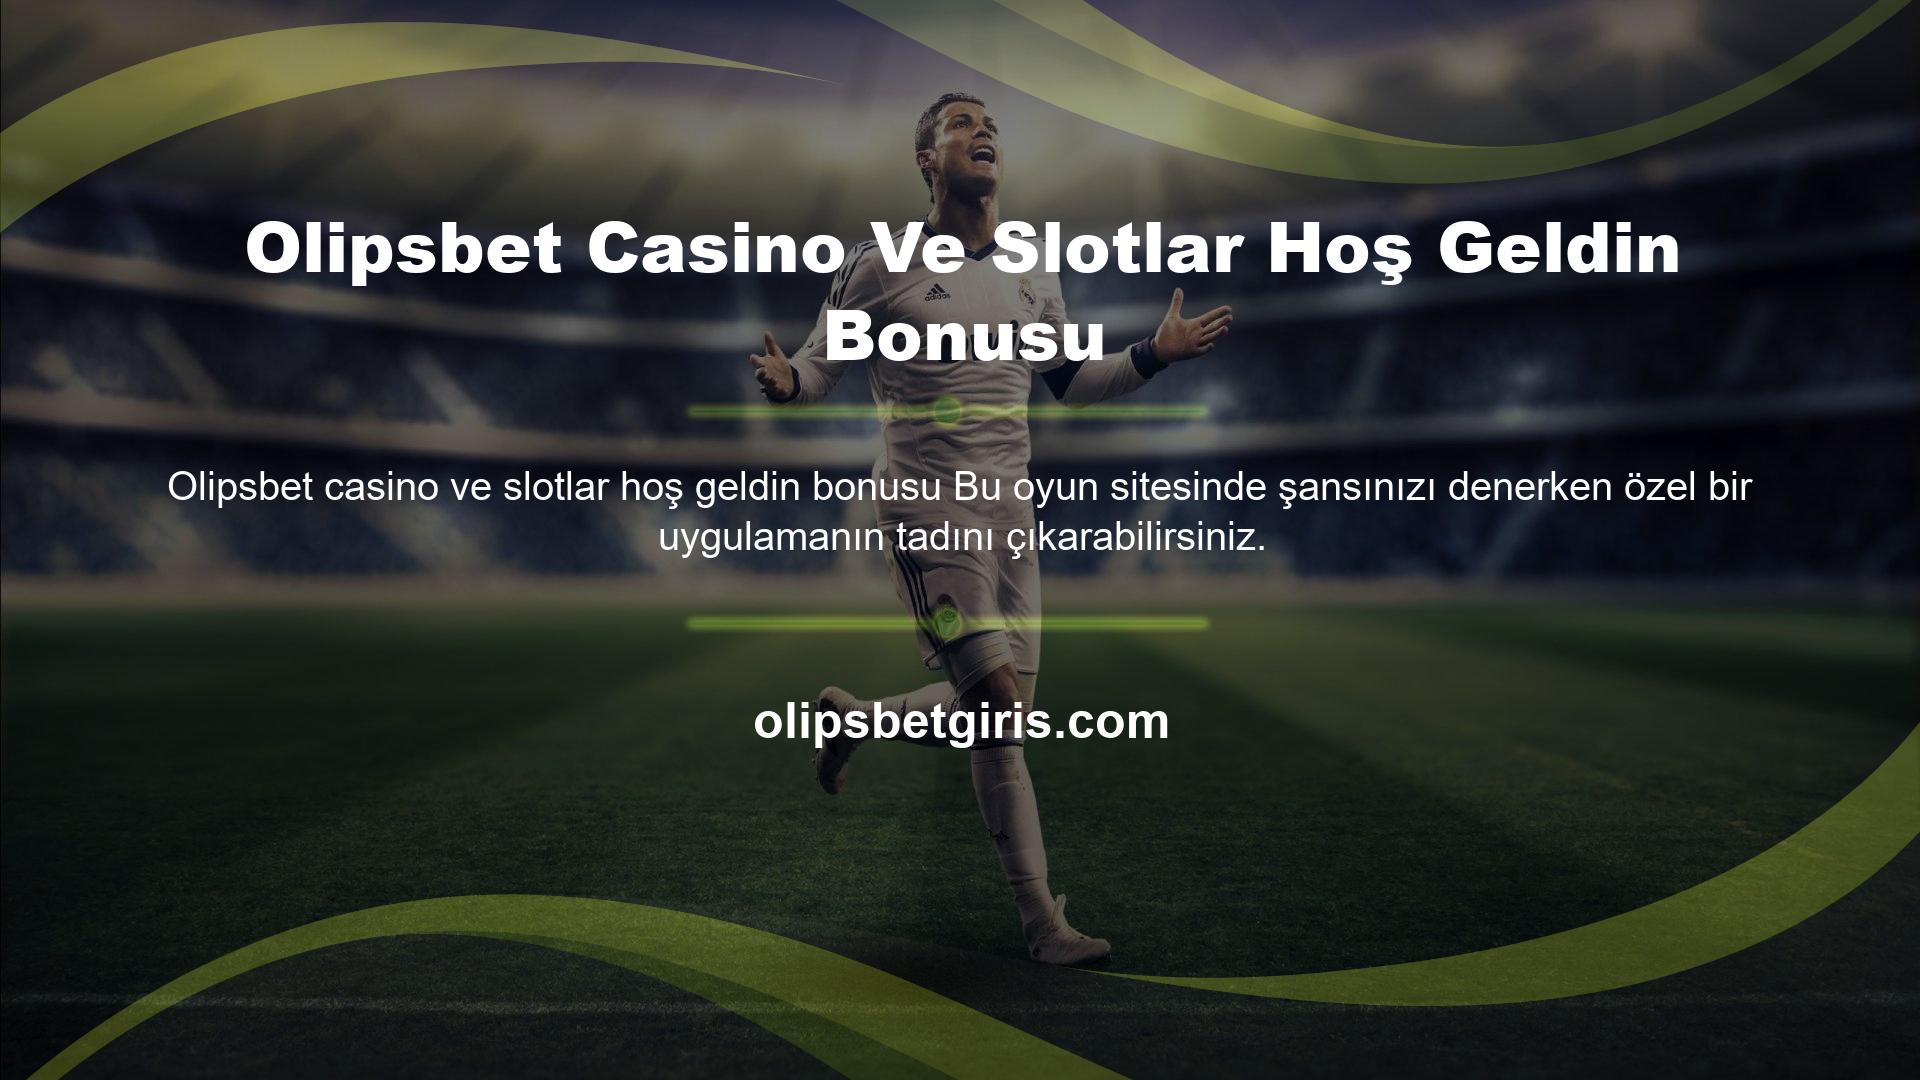 Olipsbet Casino Ve Slotlar Hoş Geldin Bonusu